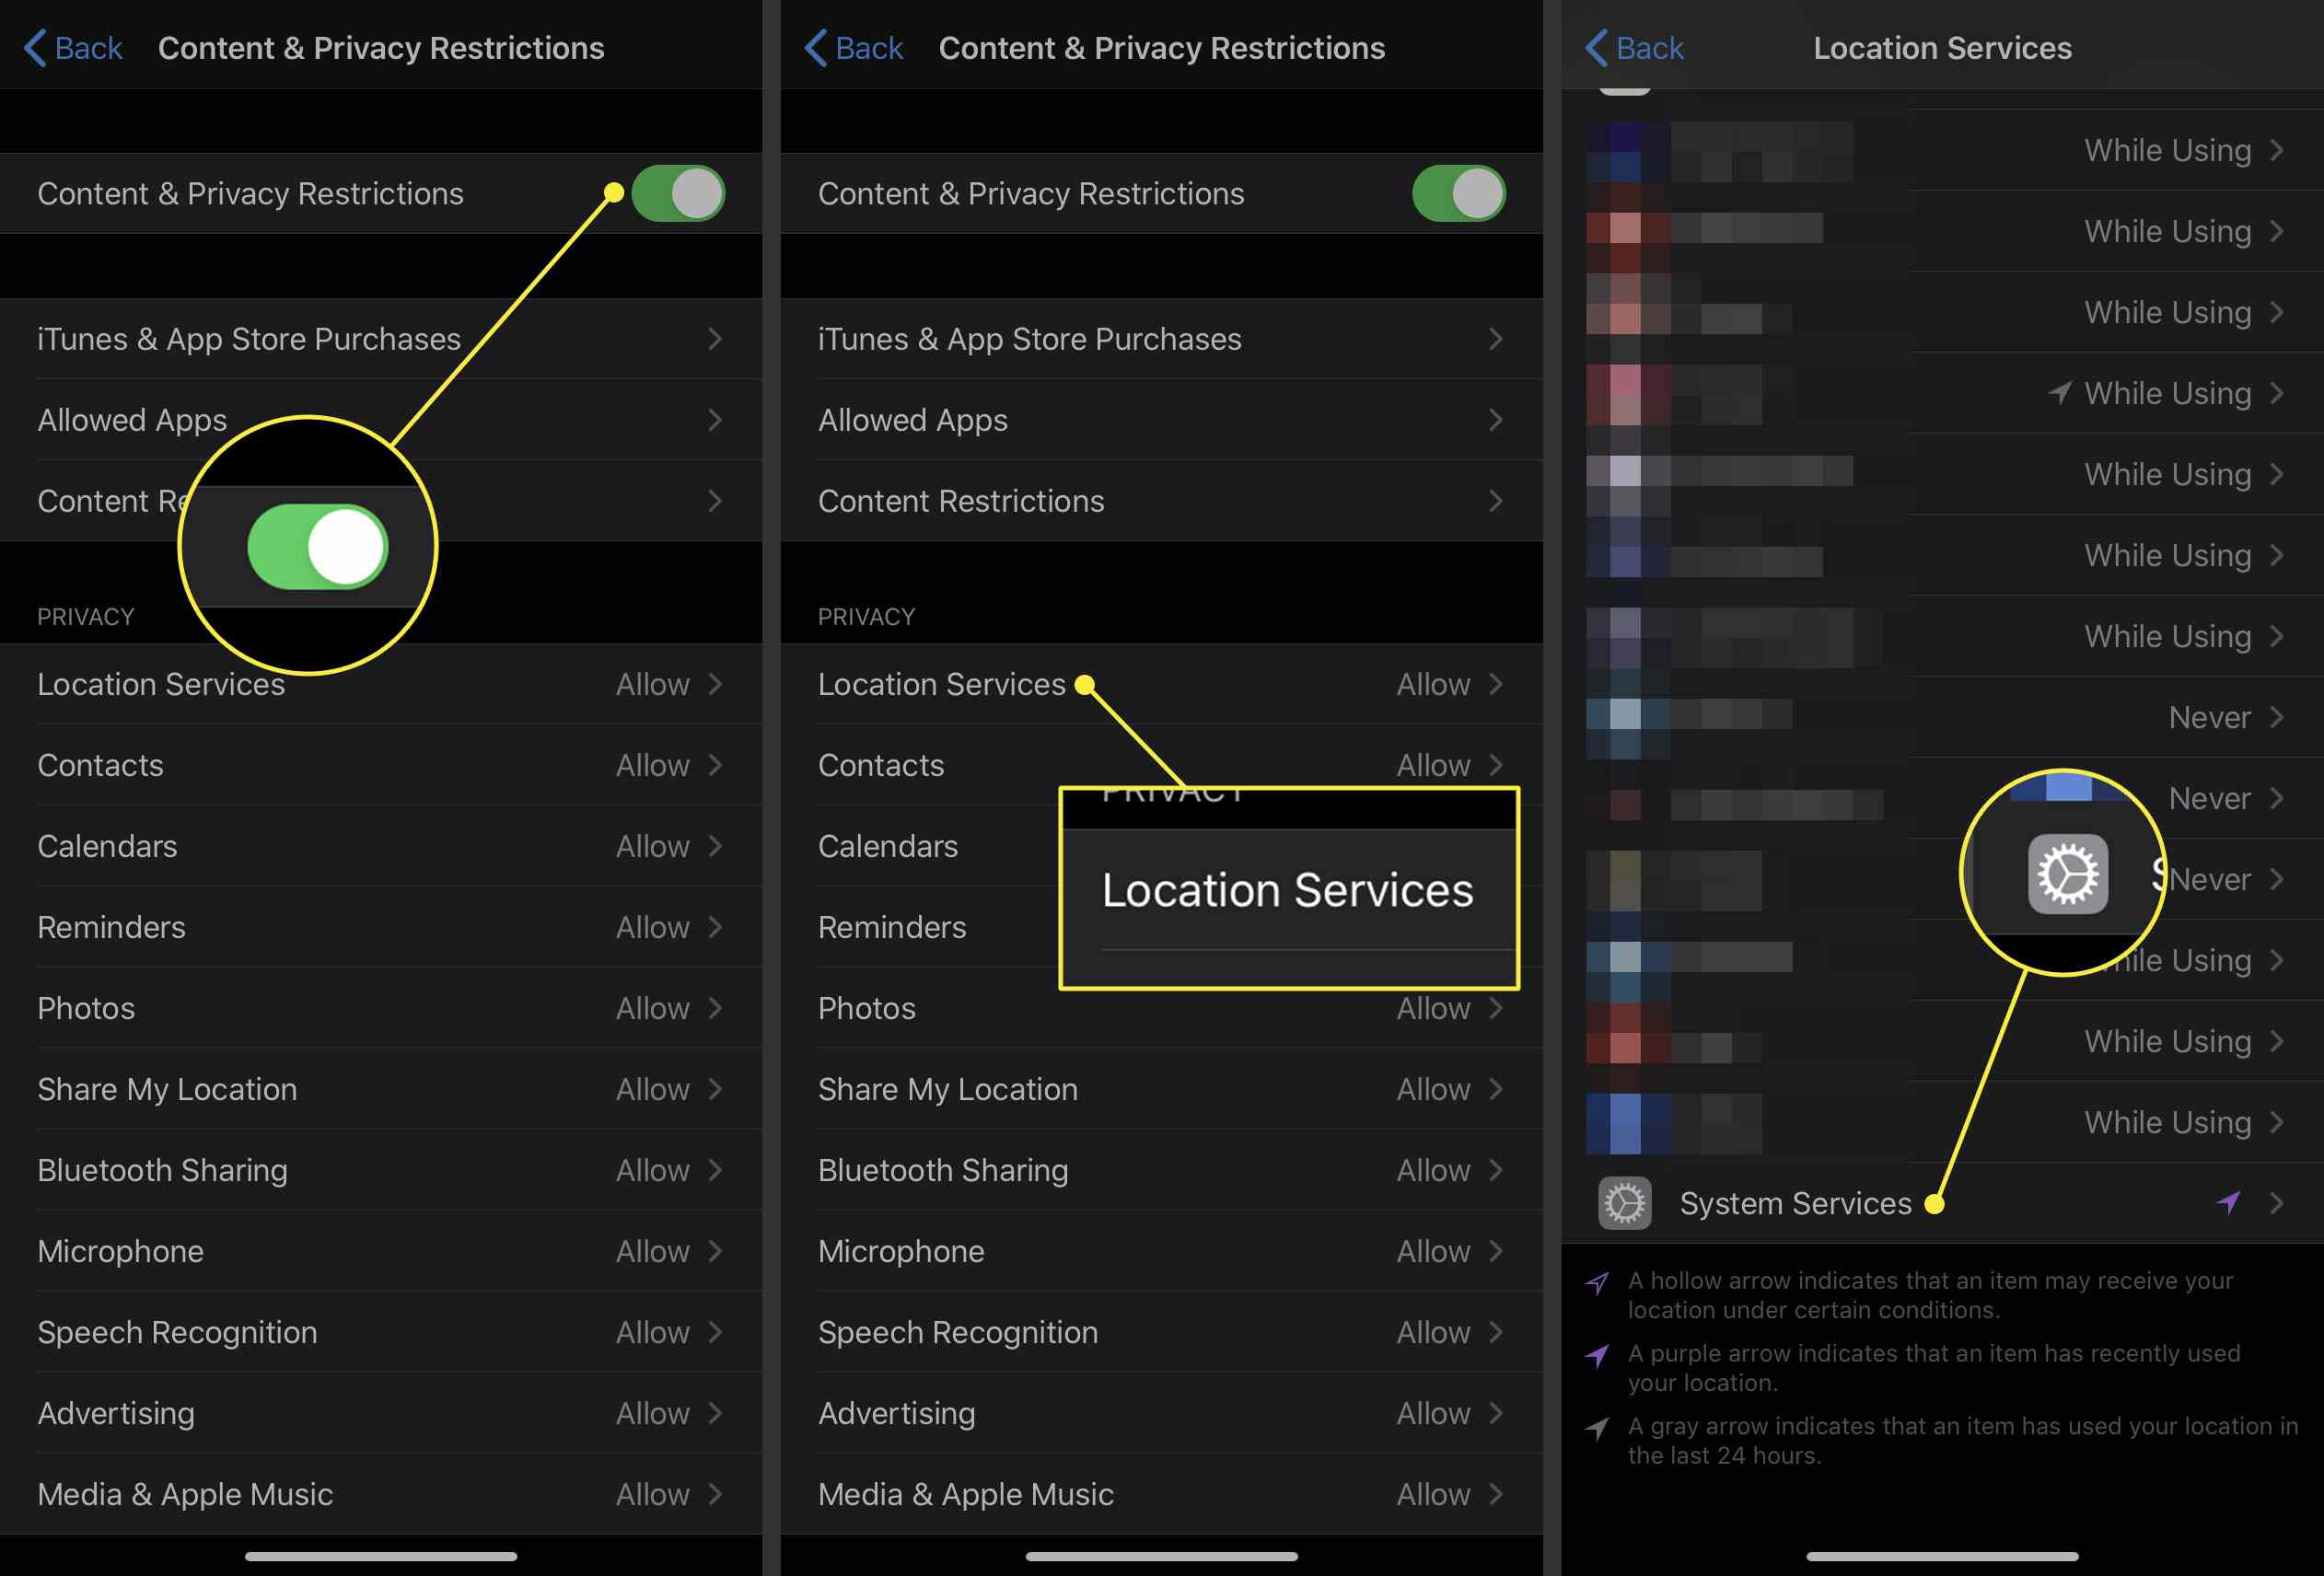 iPhone-schermafbeeldingen met inhouds- en privacybeperkingen, locatieservices en systeemservices